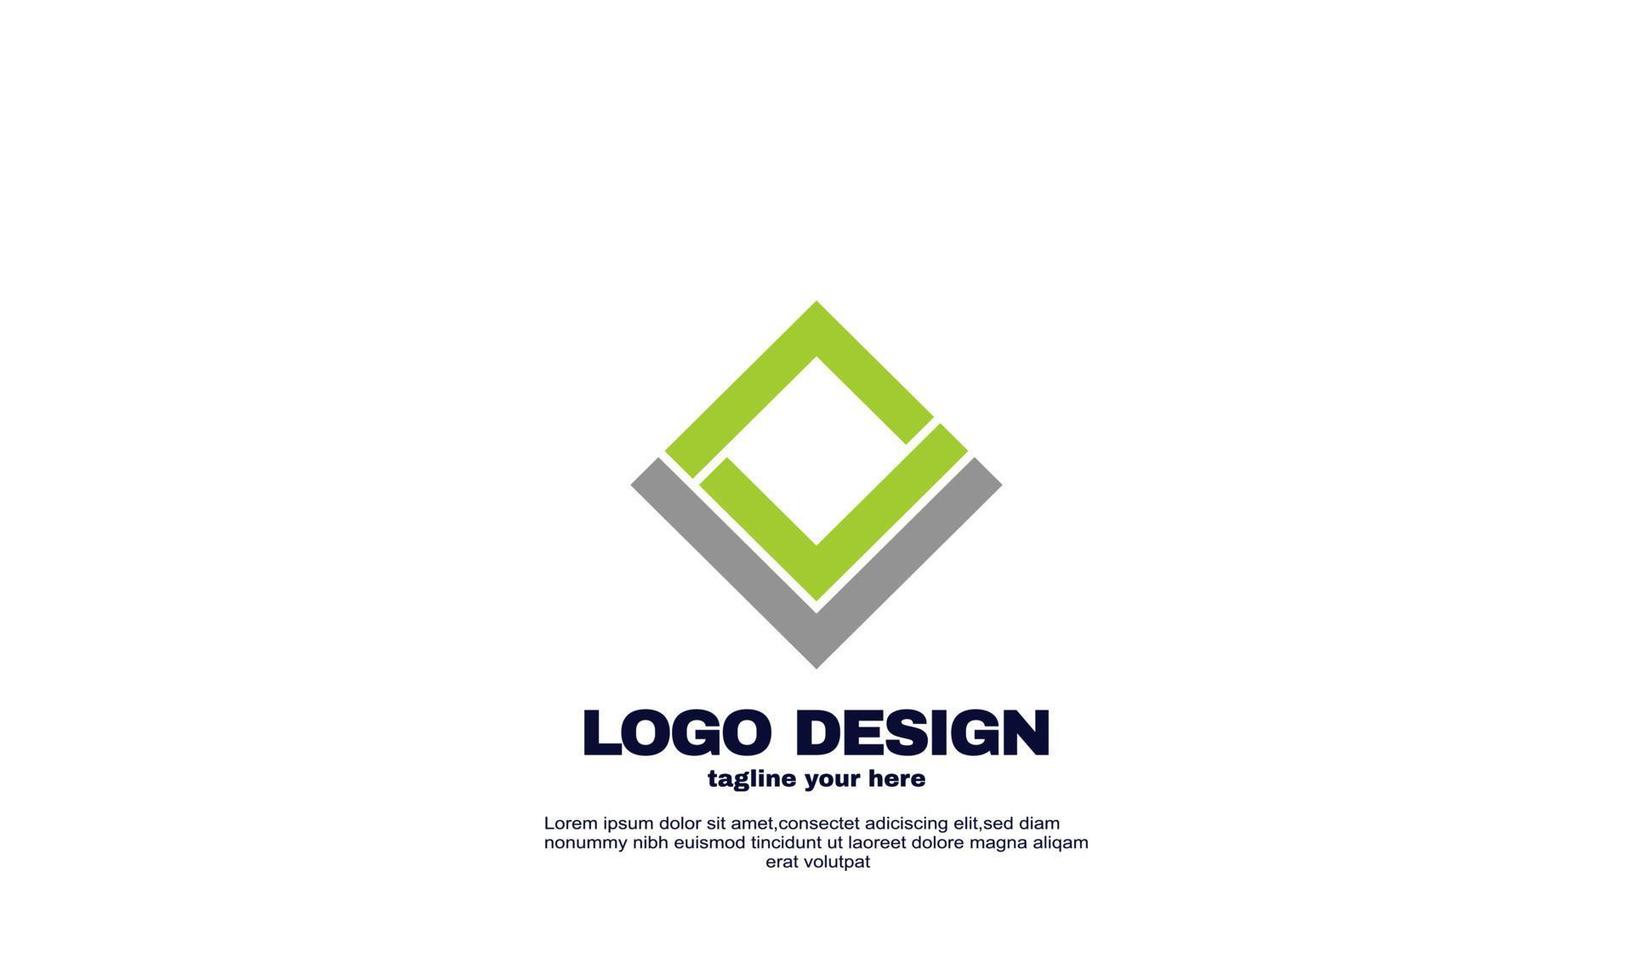 elementos de design de ilustração de estoque seu vetor de design de logotipo exclusivo de negócios de empresa de marca